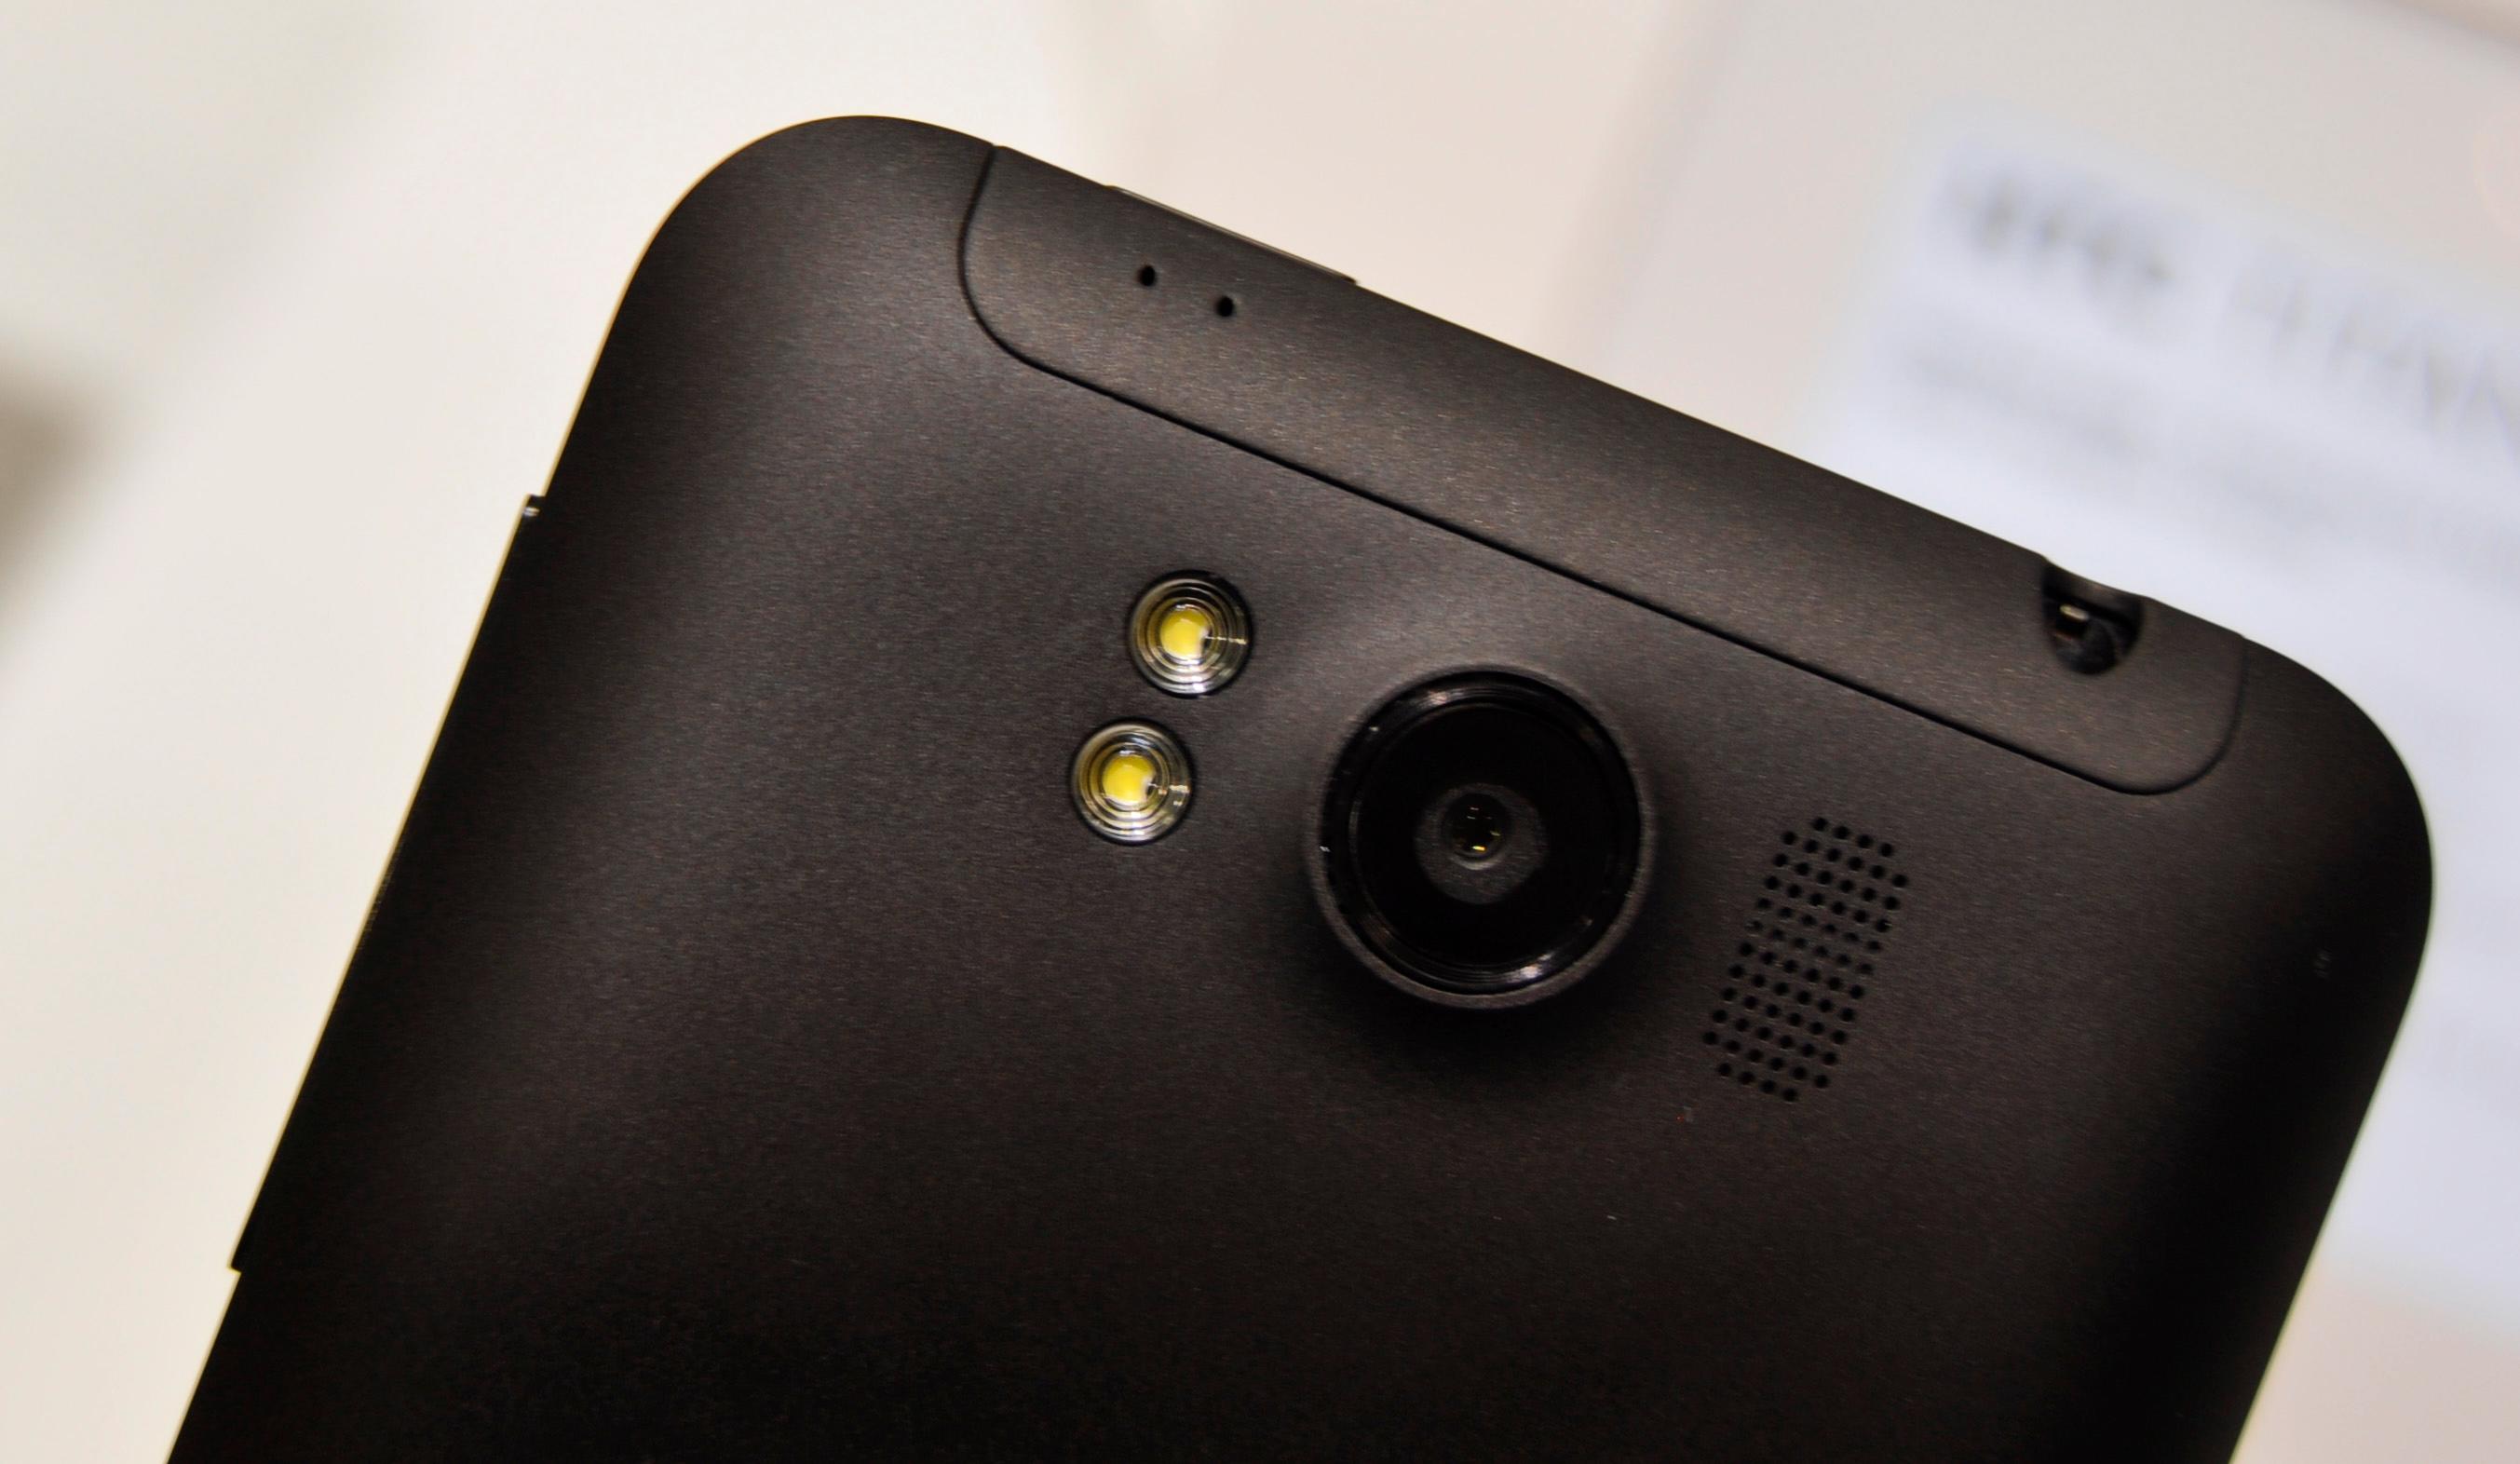 Bakgrunnsbelyst kamerasensor og blender på f/2.2 skal gjøre Titan i stand til å ta gode bilder, ifølge HTCs pressemelding.